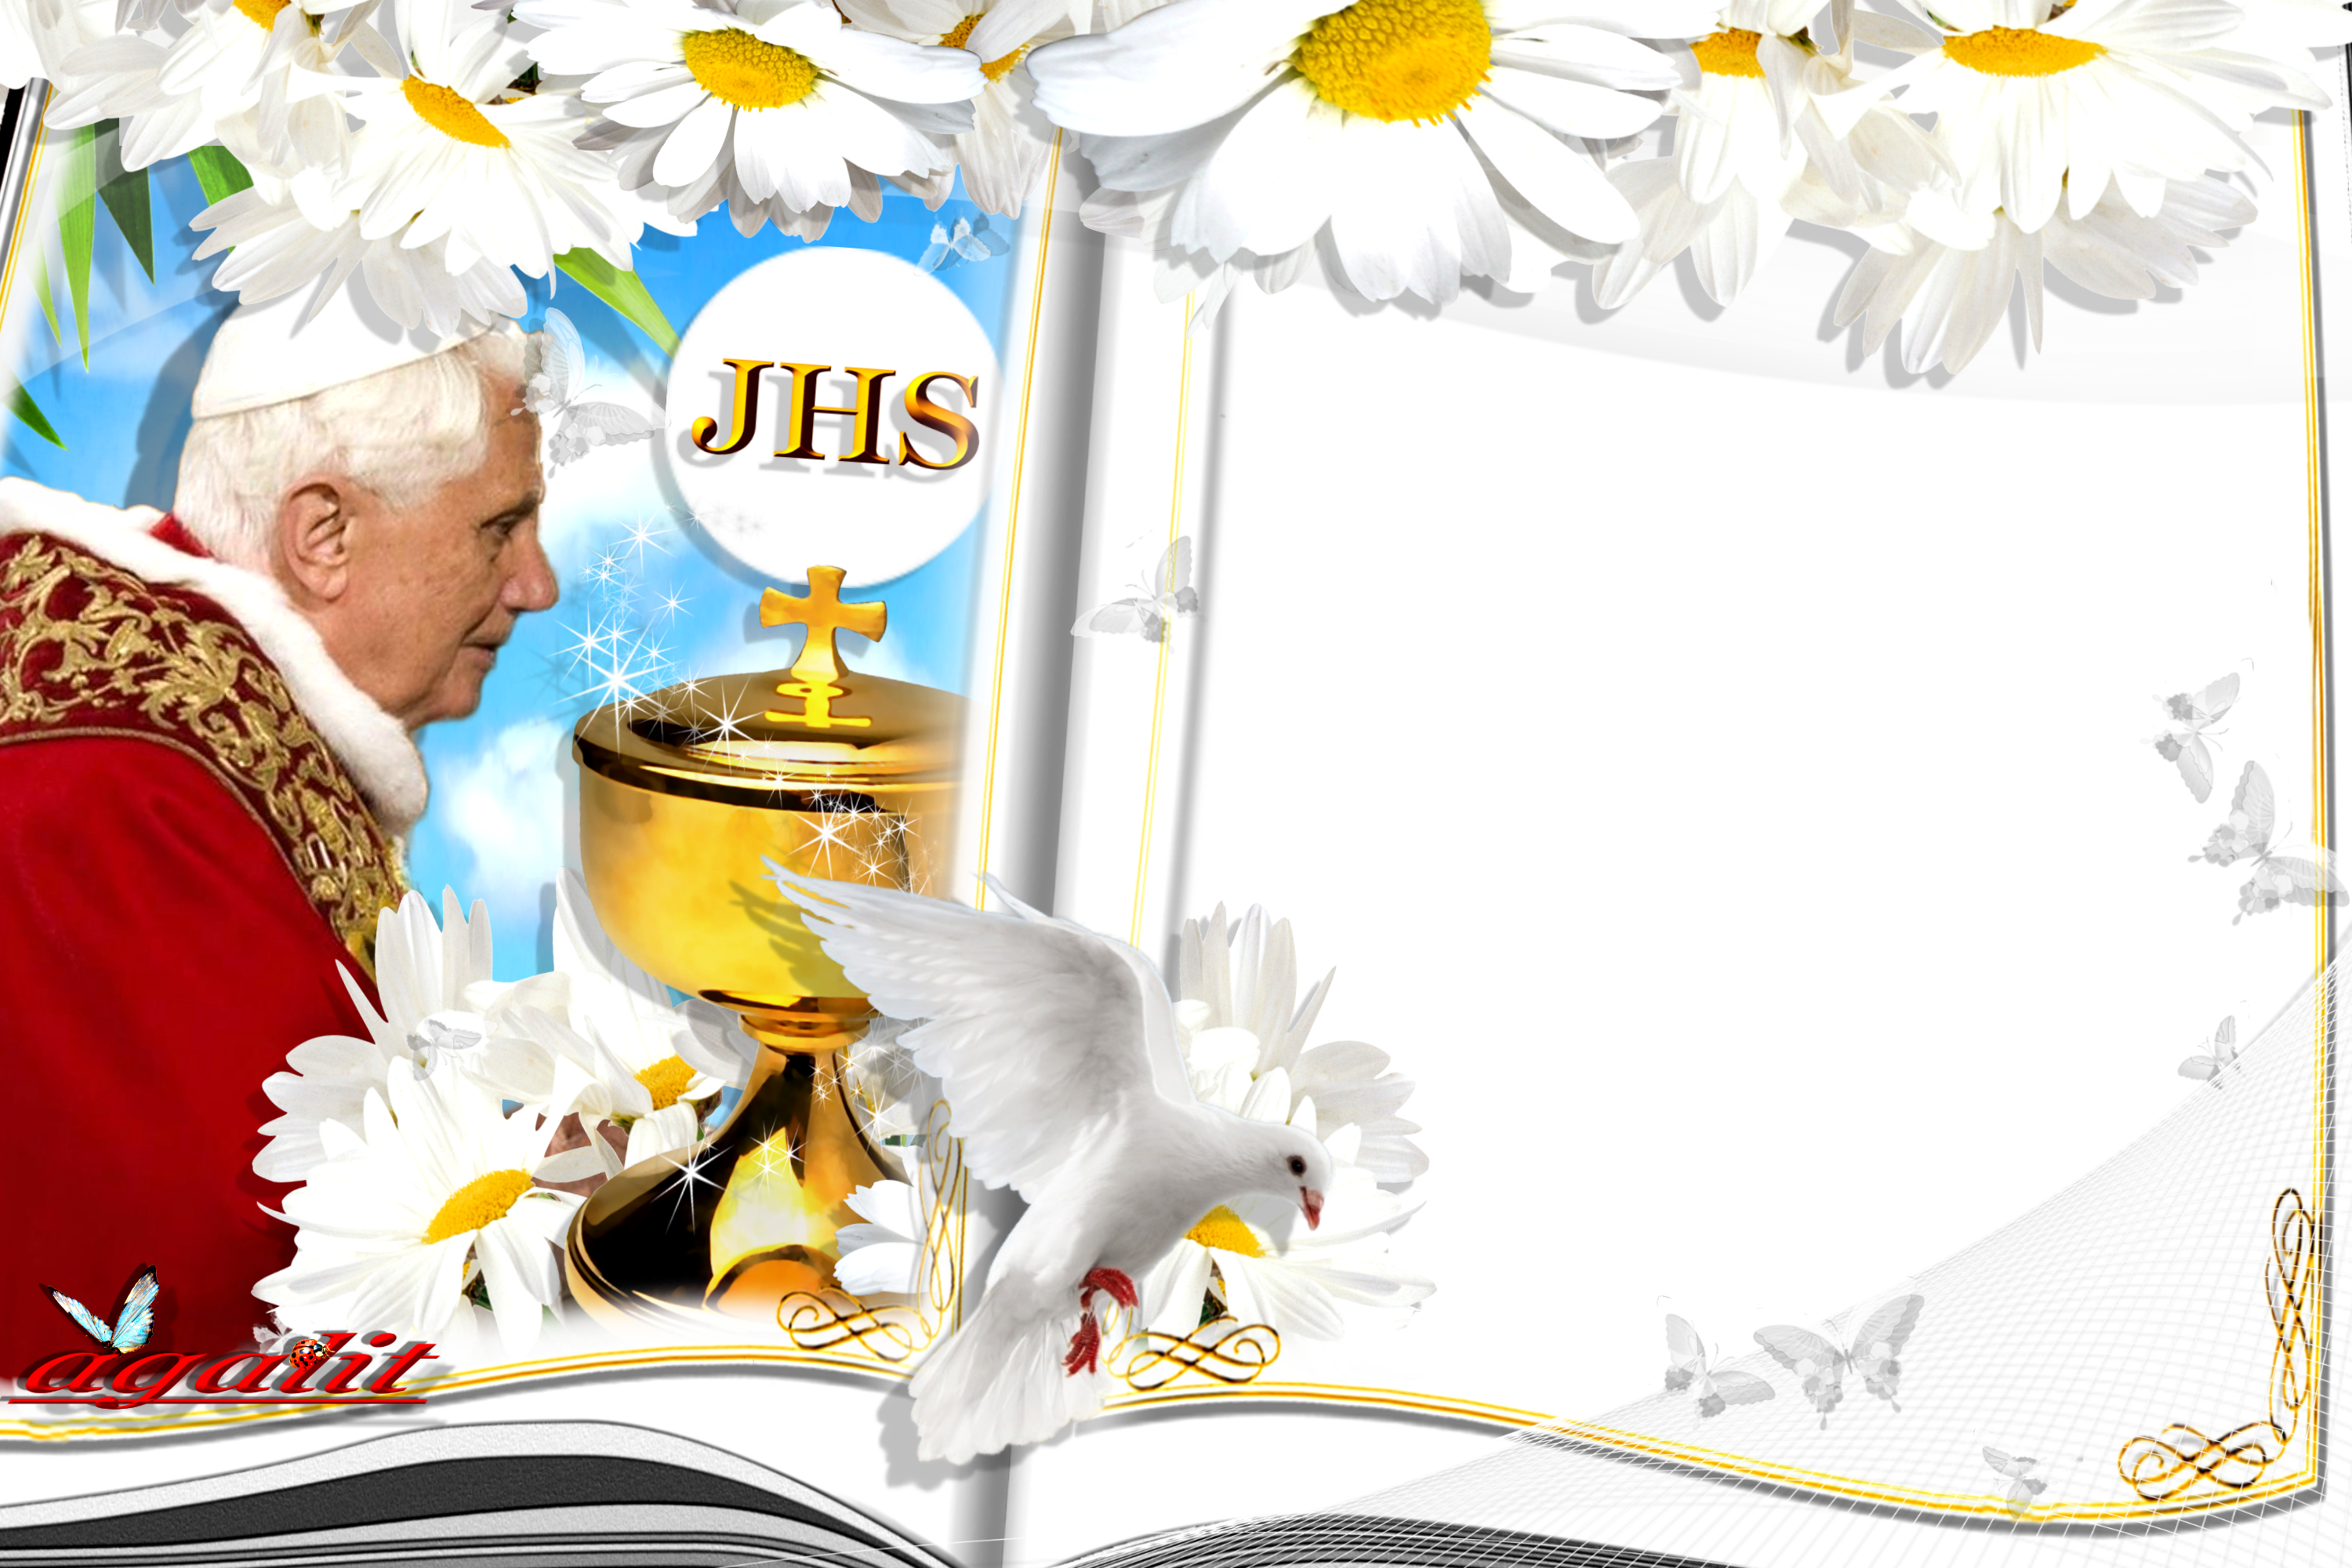 Ramki z Papieżem Benedyktem XVI - Benedykt XVI.png